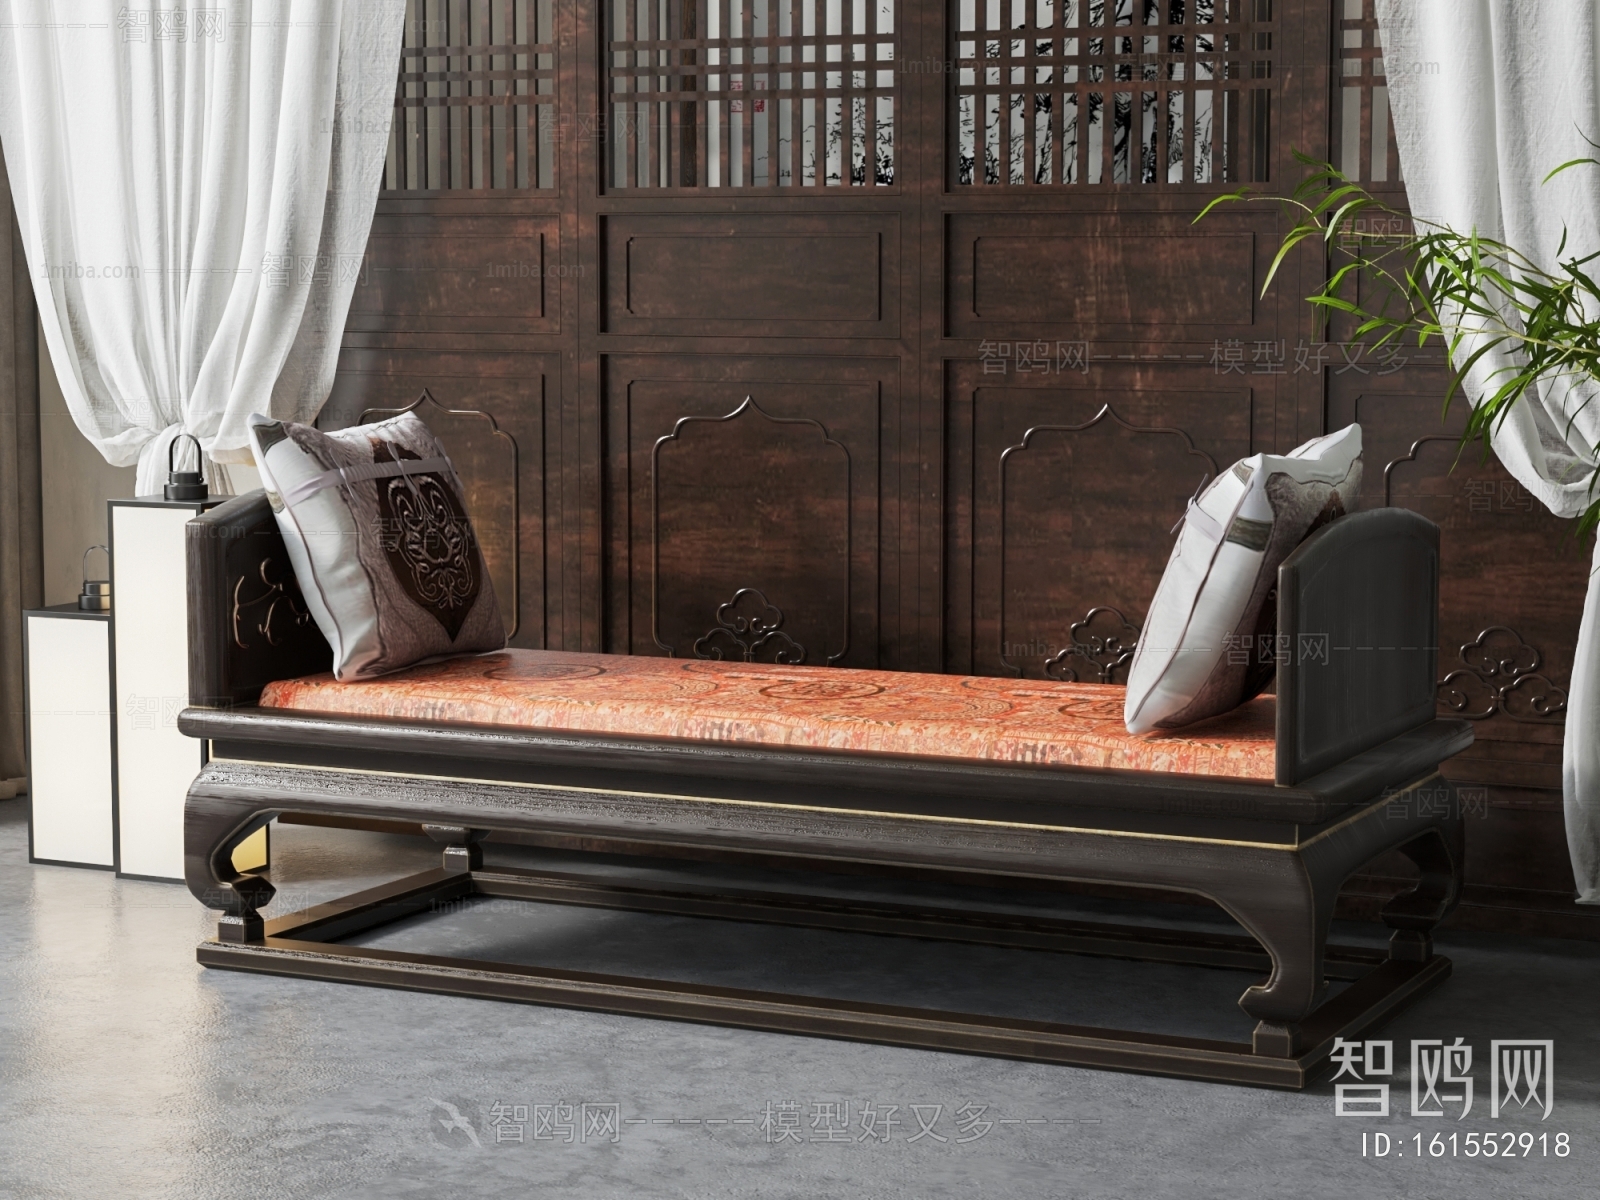 Chinese Style Sofa Stool